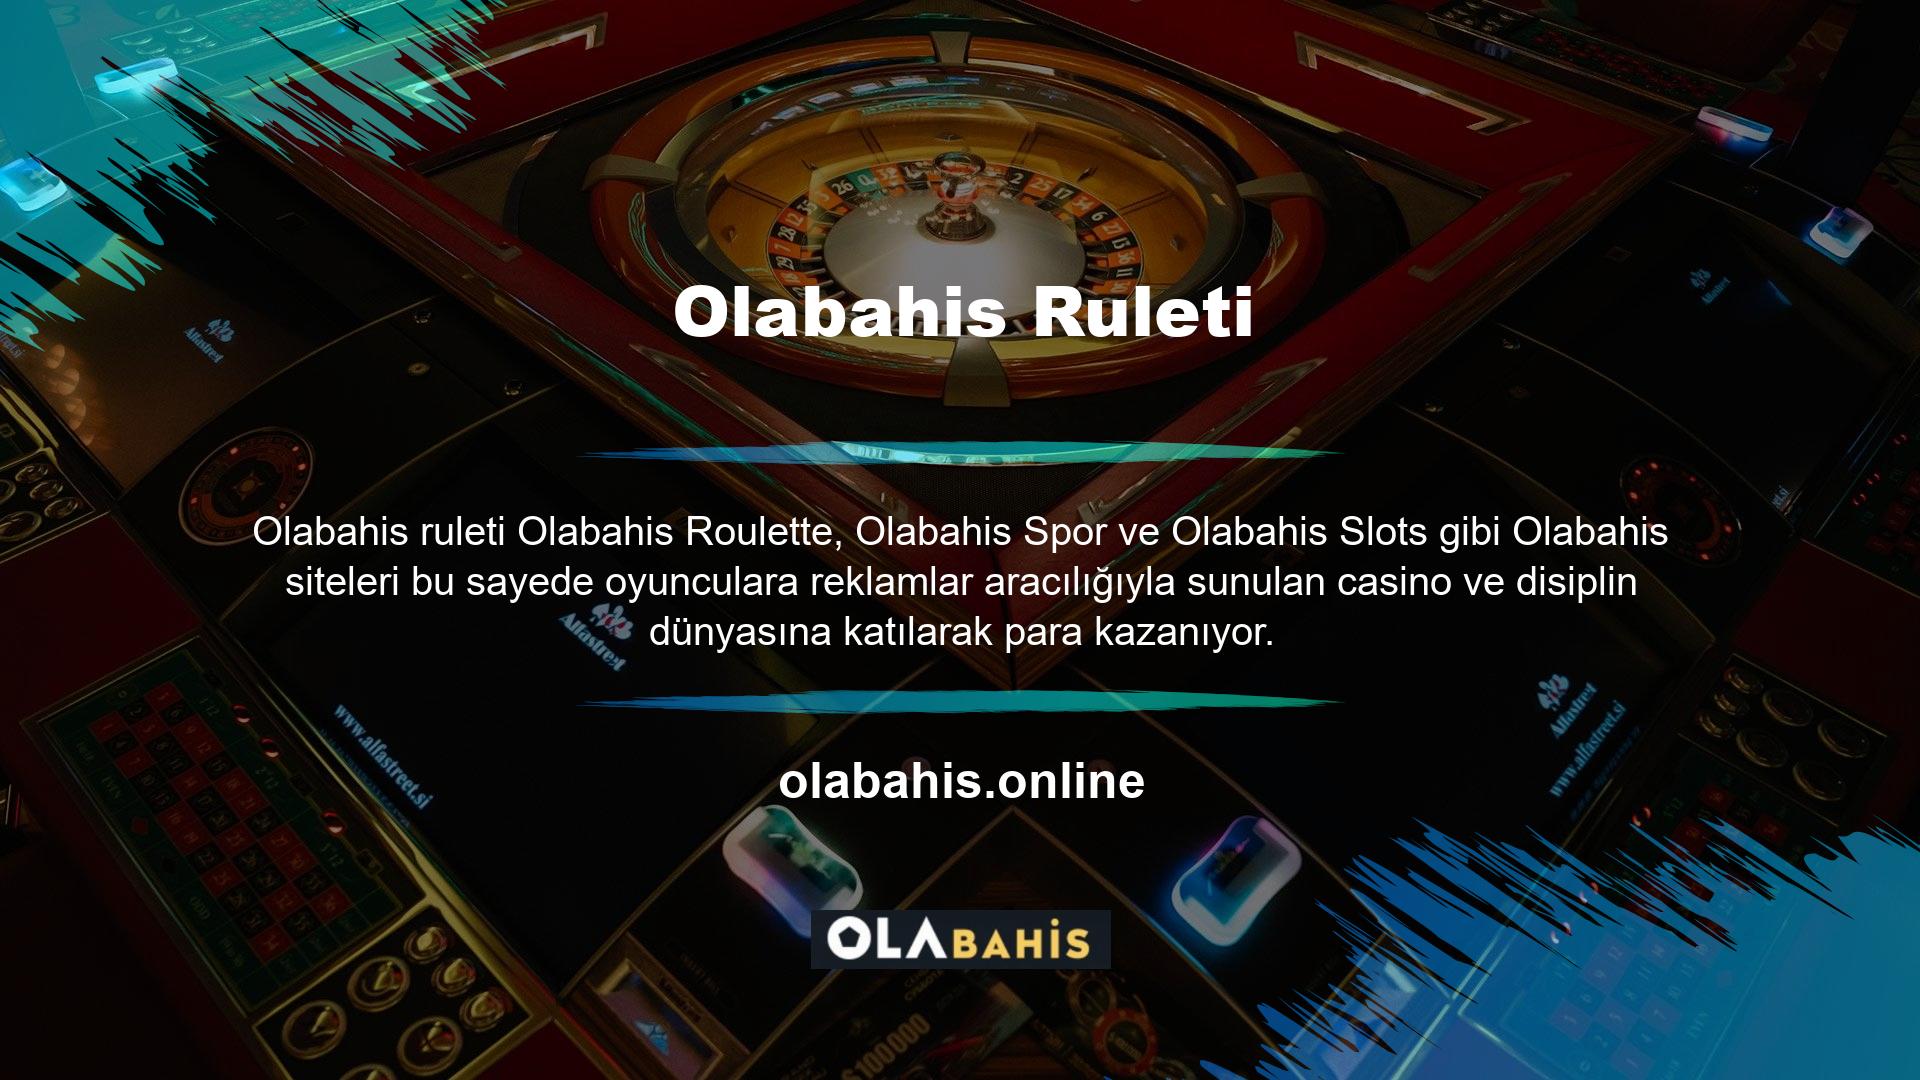 En kazançlı ve heyecan verici canlı casino oyunlarından biri olan ruleti oynamak için bir platform şarttır